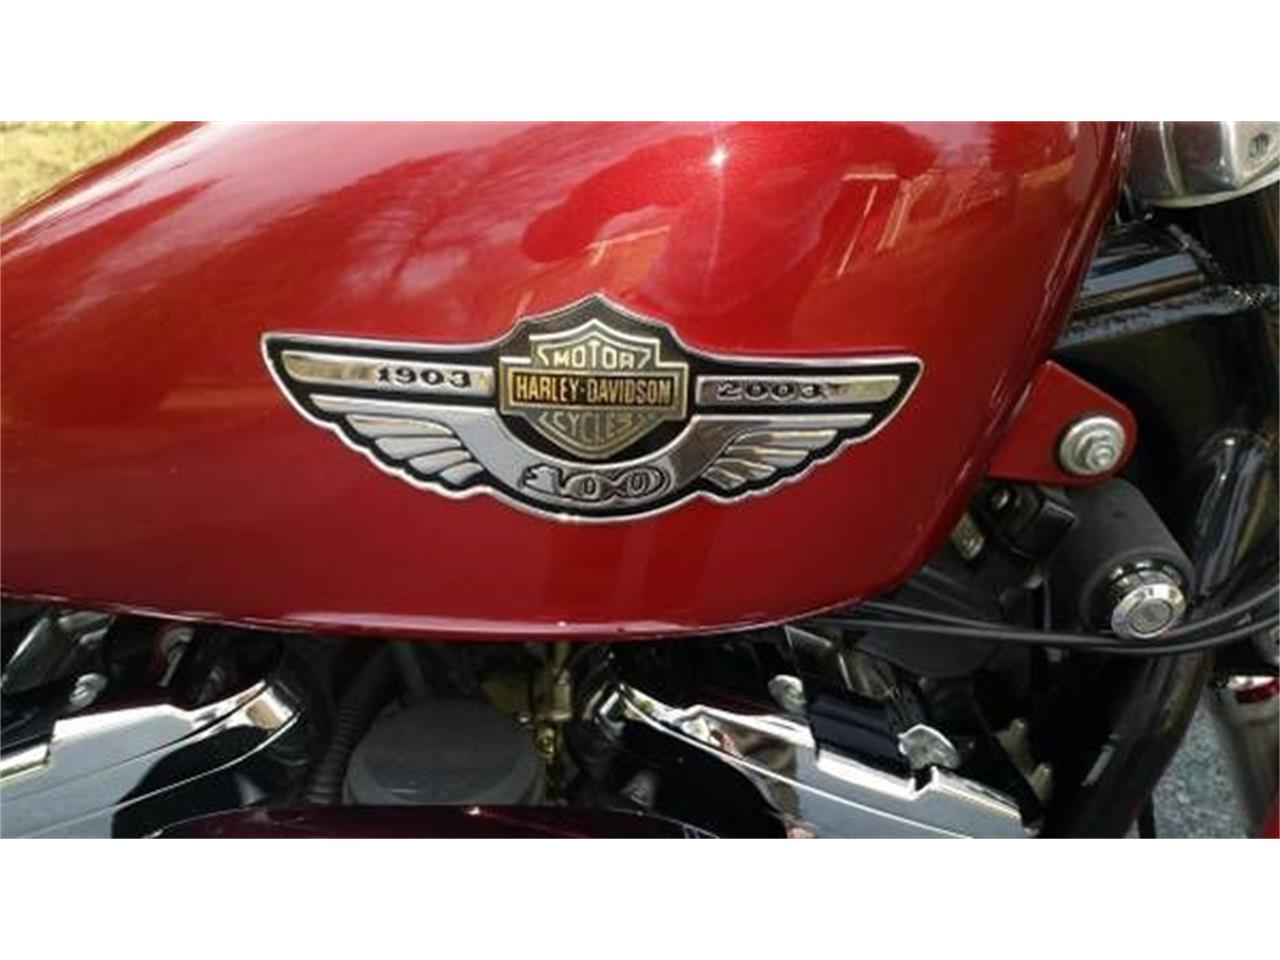 2003 Harley-Davidson Sportster for sale in Cadillac, MI